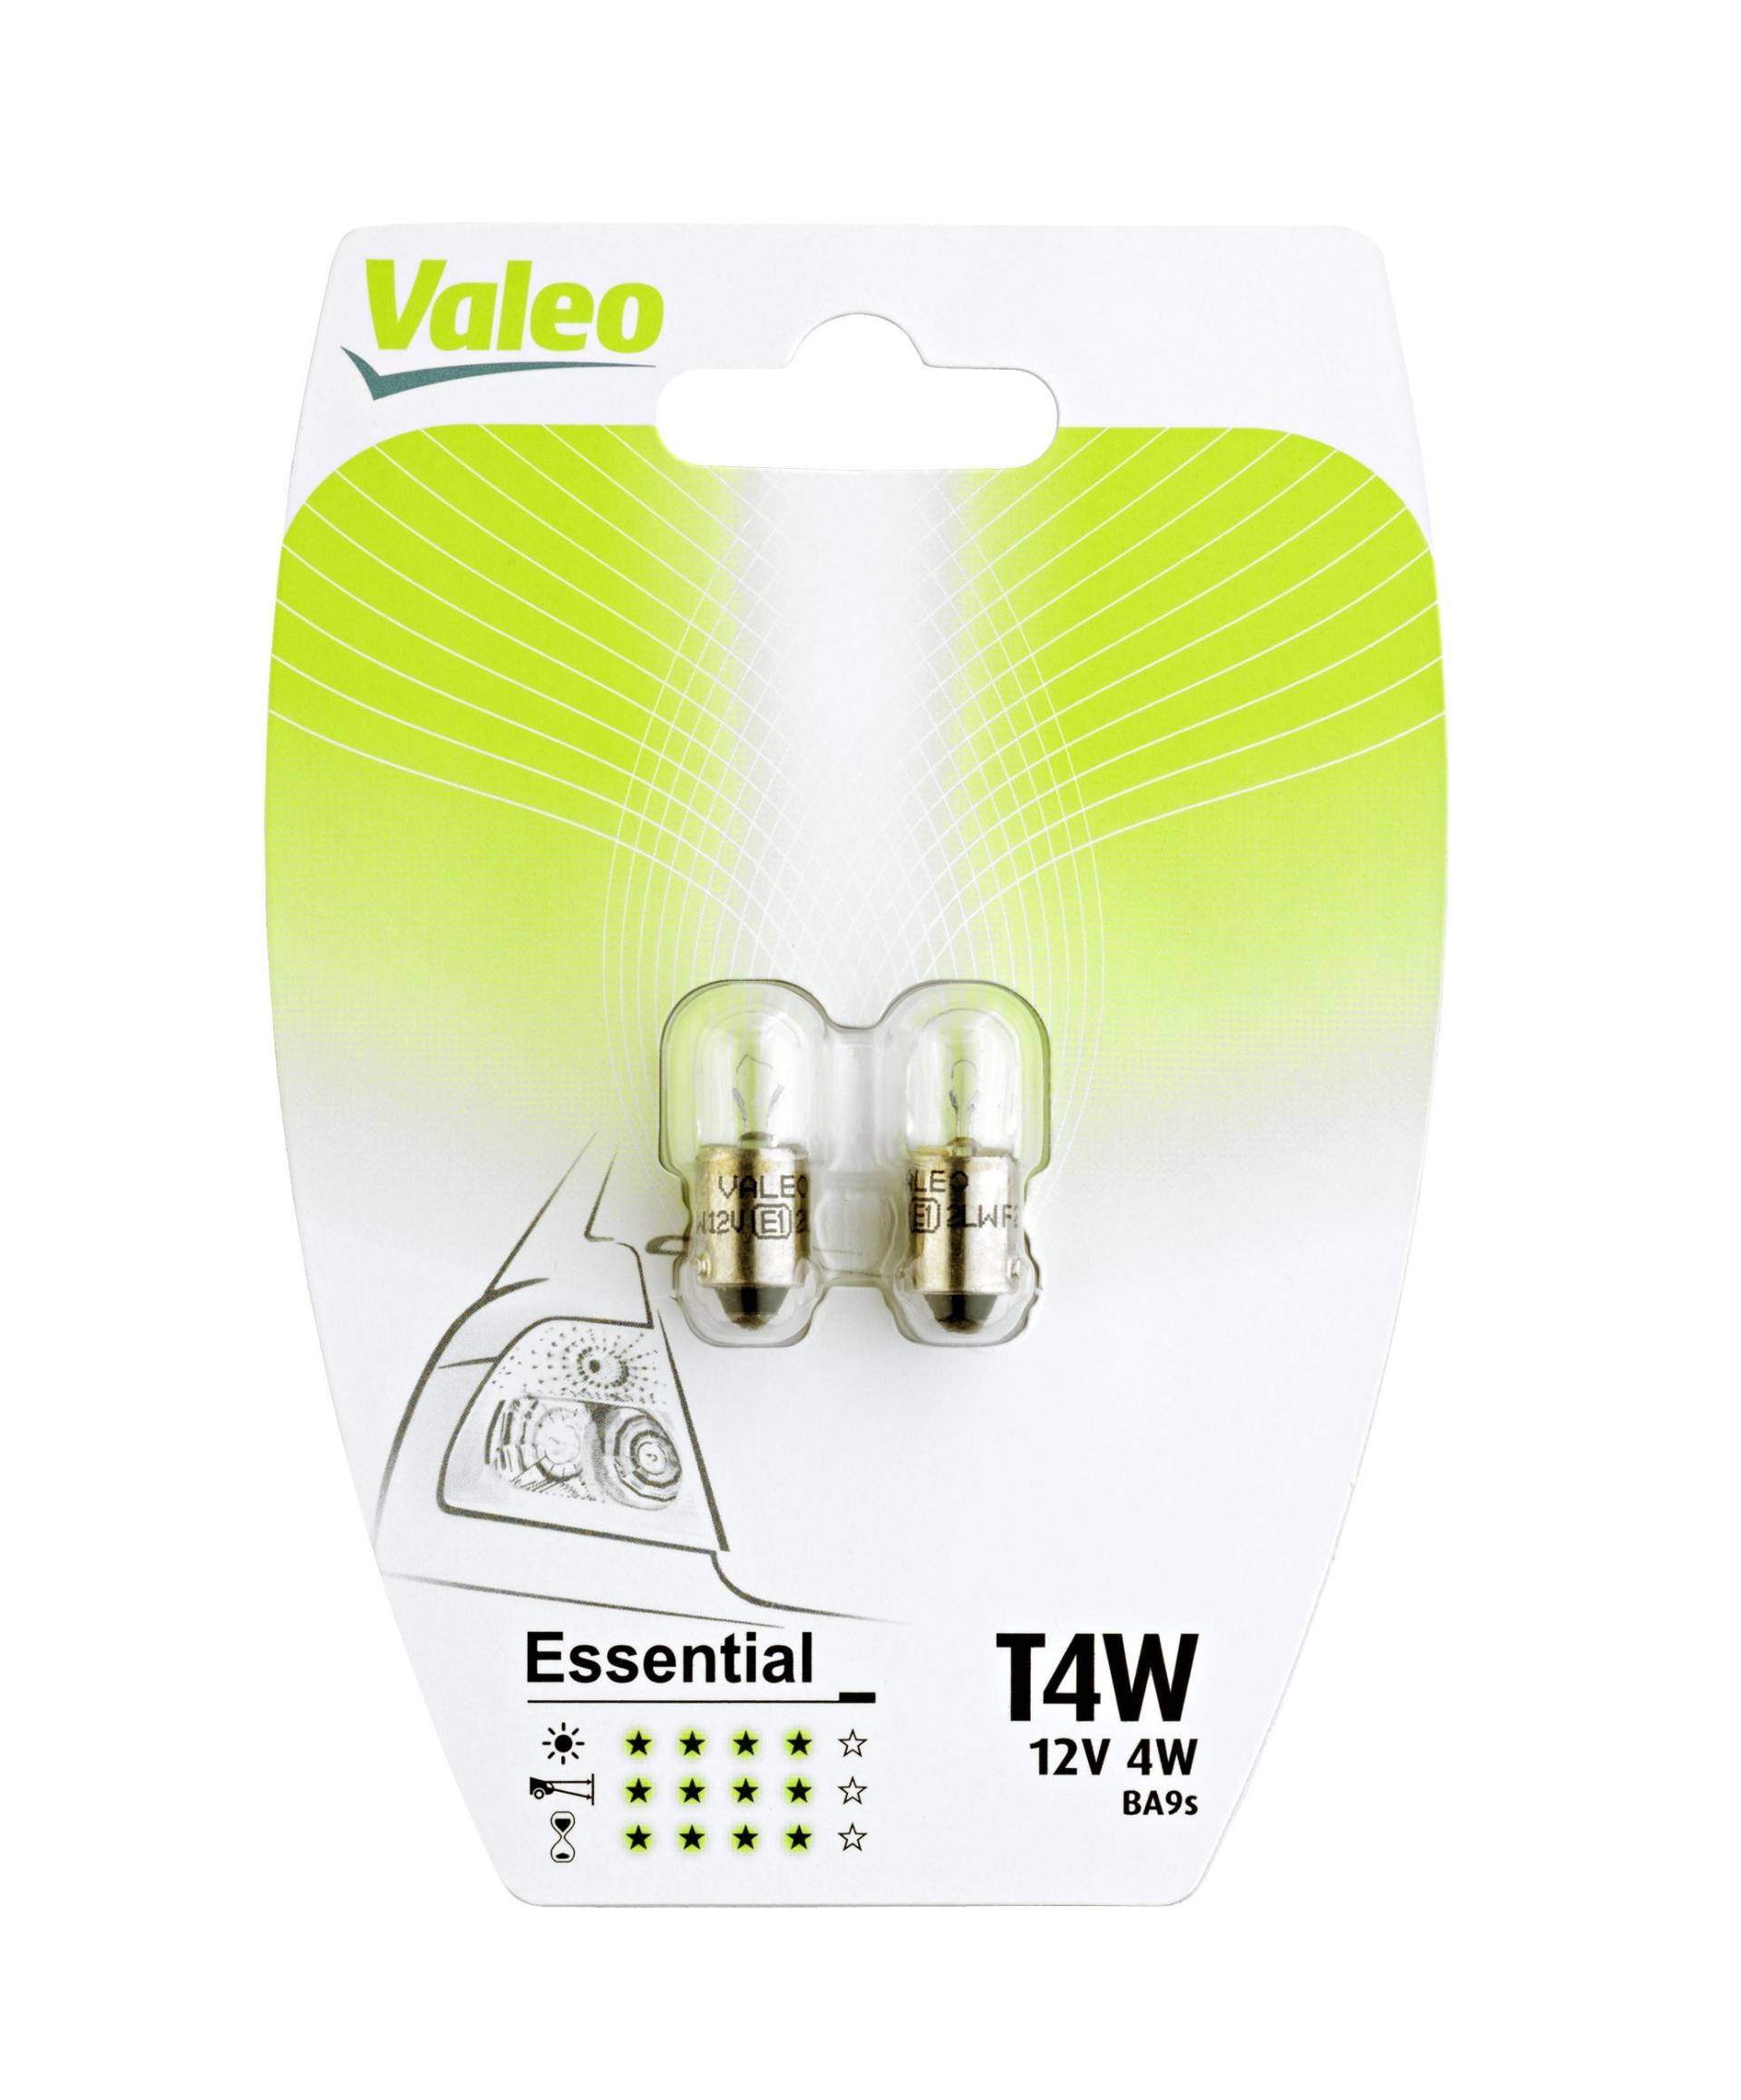 Valeo Halogen Glühlampe, T4W-Essential-Blister x2, 32130, Set of 2 von Valeo